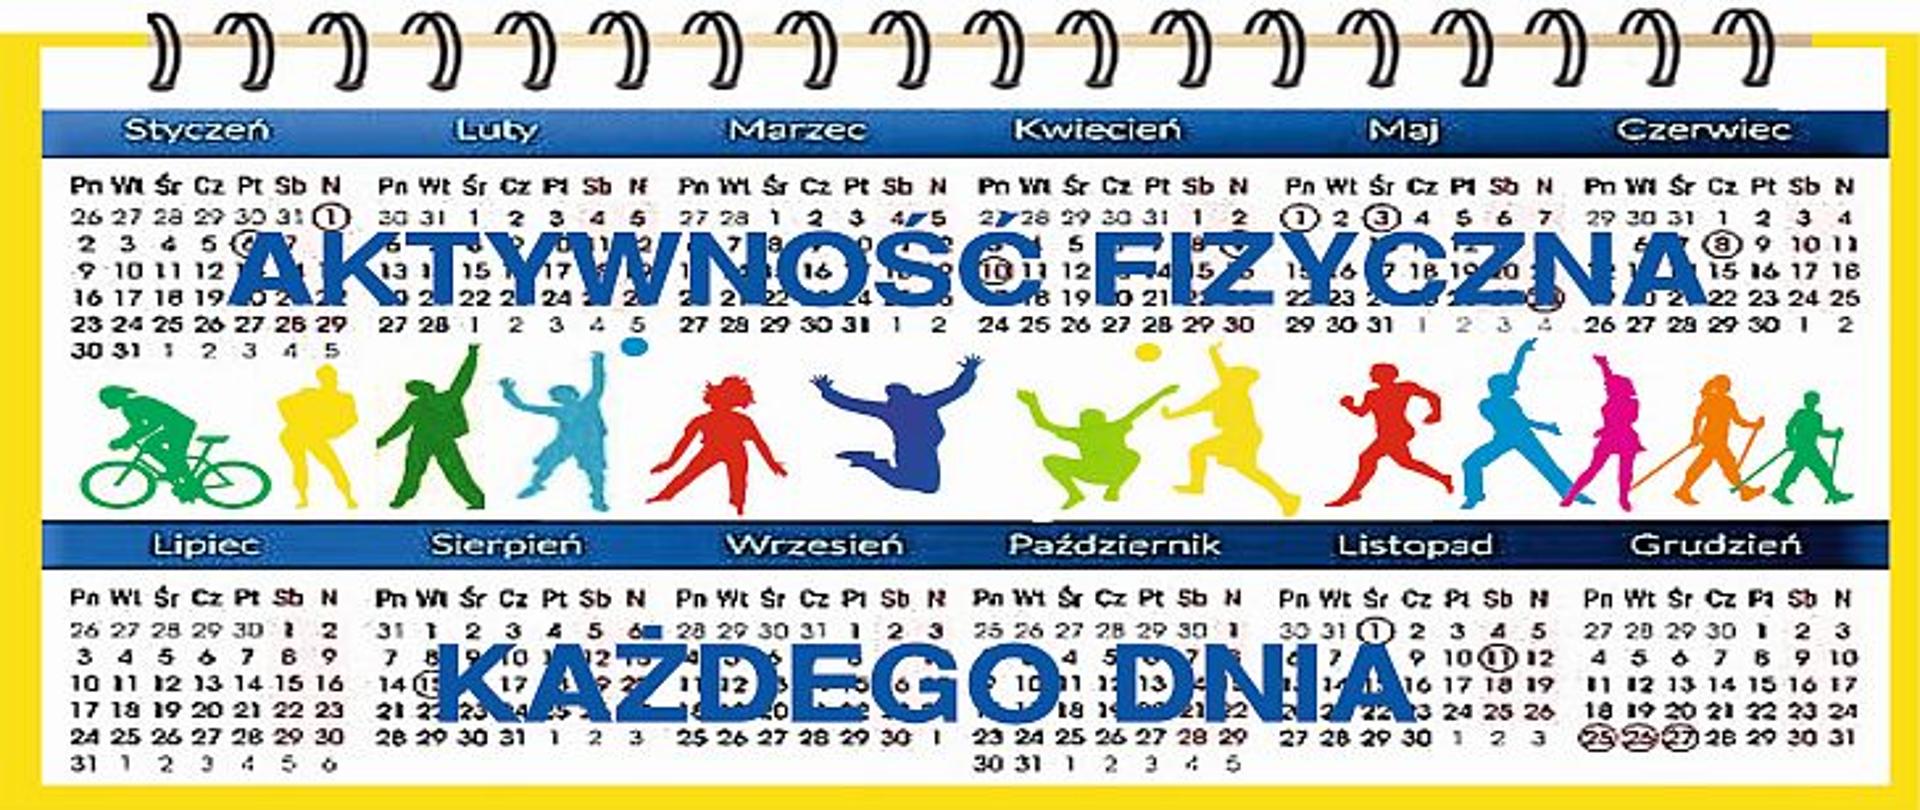 W tle kalendarz, na środku baneru znajduję się kolorowe postacie przedstawiające różne aktywności fizyczne, napis: aktywność fizyczna każdego dnia